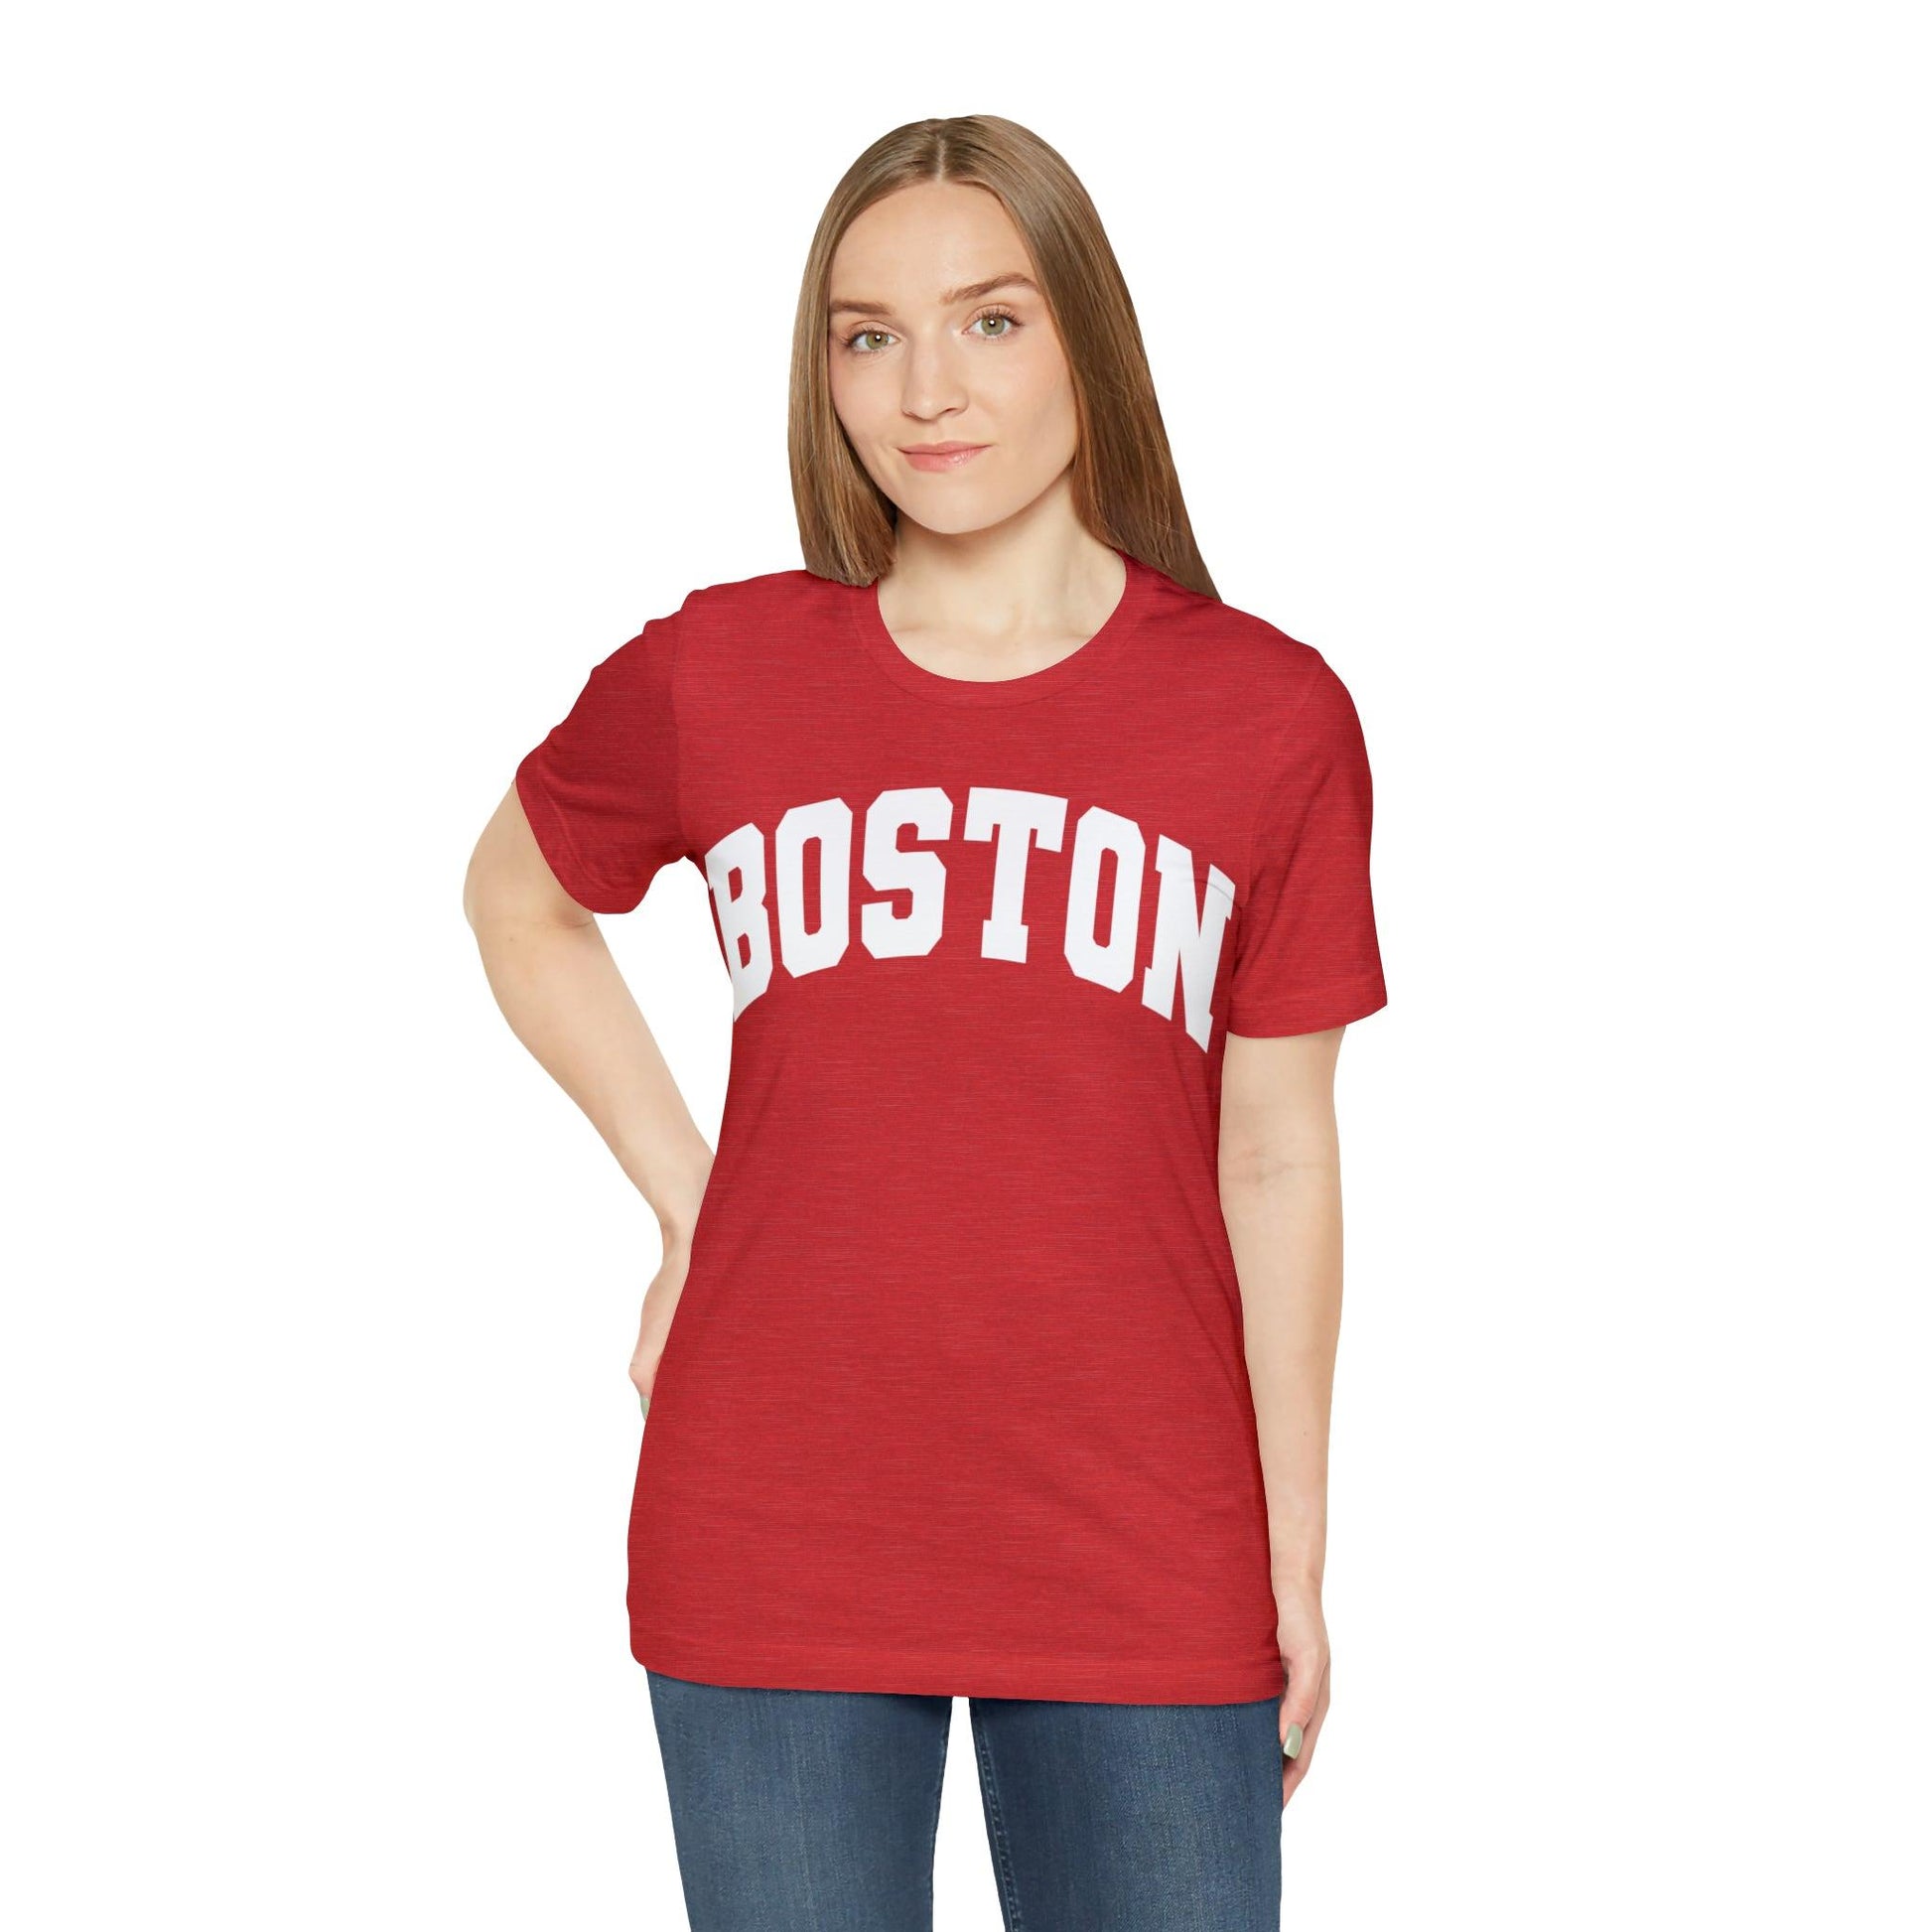 Boston Massachusetts Shirt, Boston Souvenir, Boston shirt, Boston Tshirt, Boston Vacation shirt - Giftsmojo